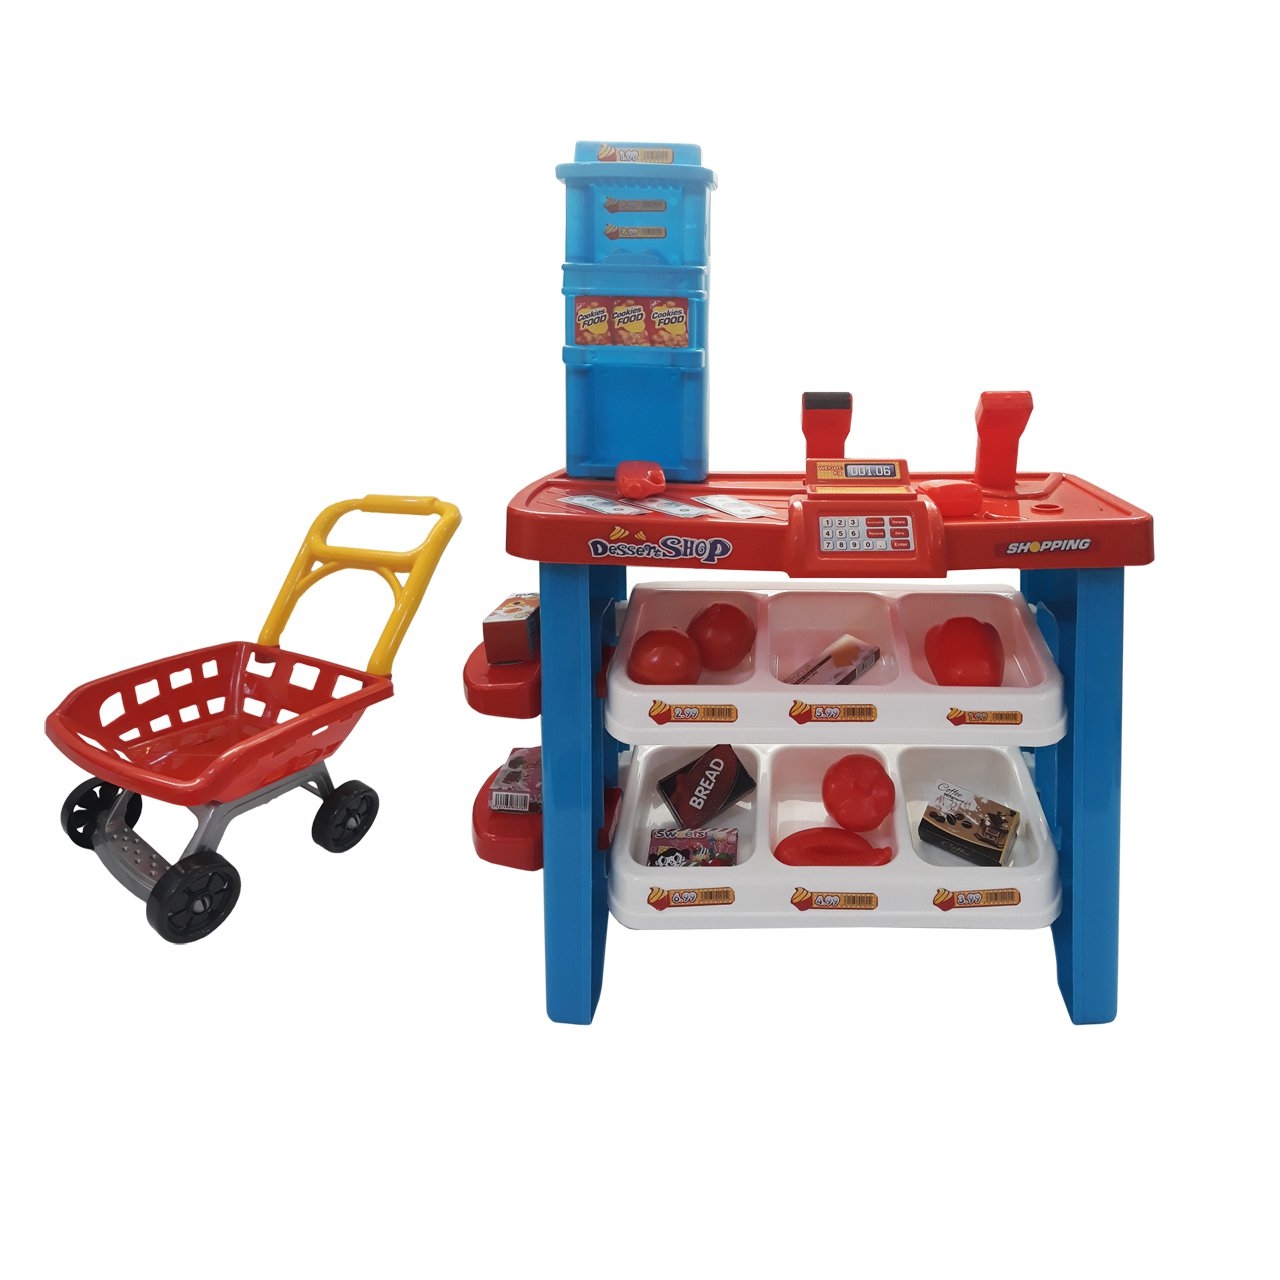 اسباب بازی بیبی بورن مدل Super Market Play Set کد 00845